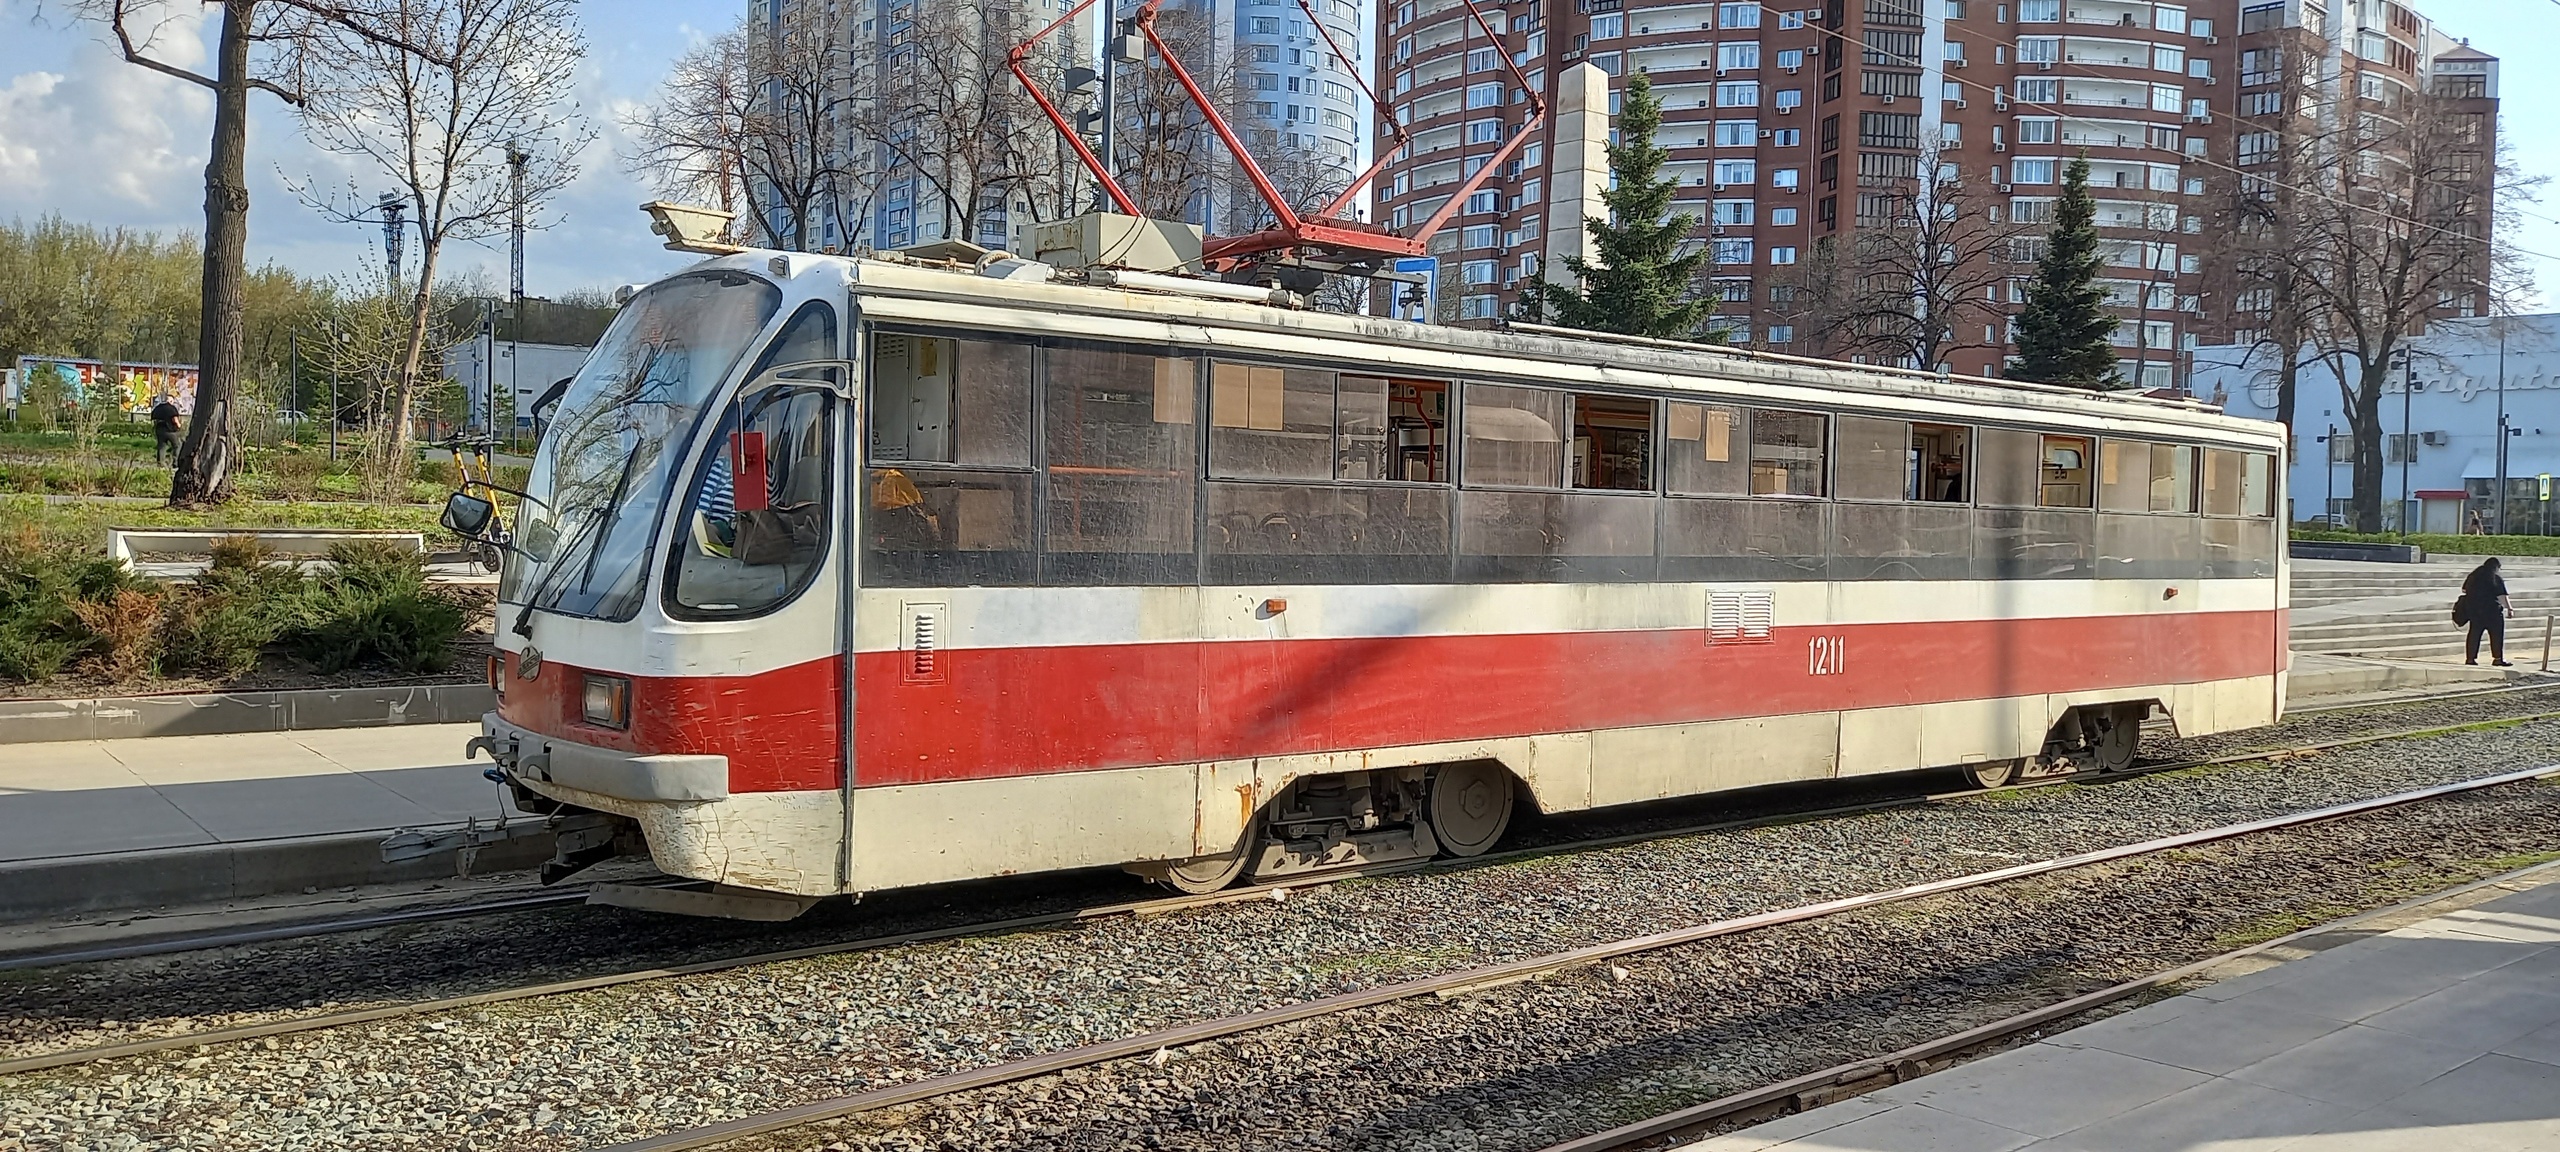  Названа причина срыва ремонта трамвайных путей на Ново-Садовой: виноват подрядчик 